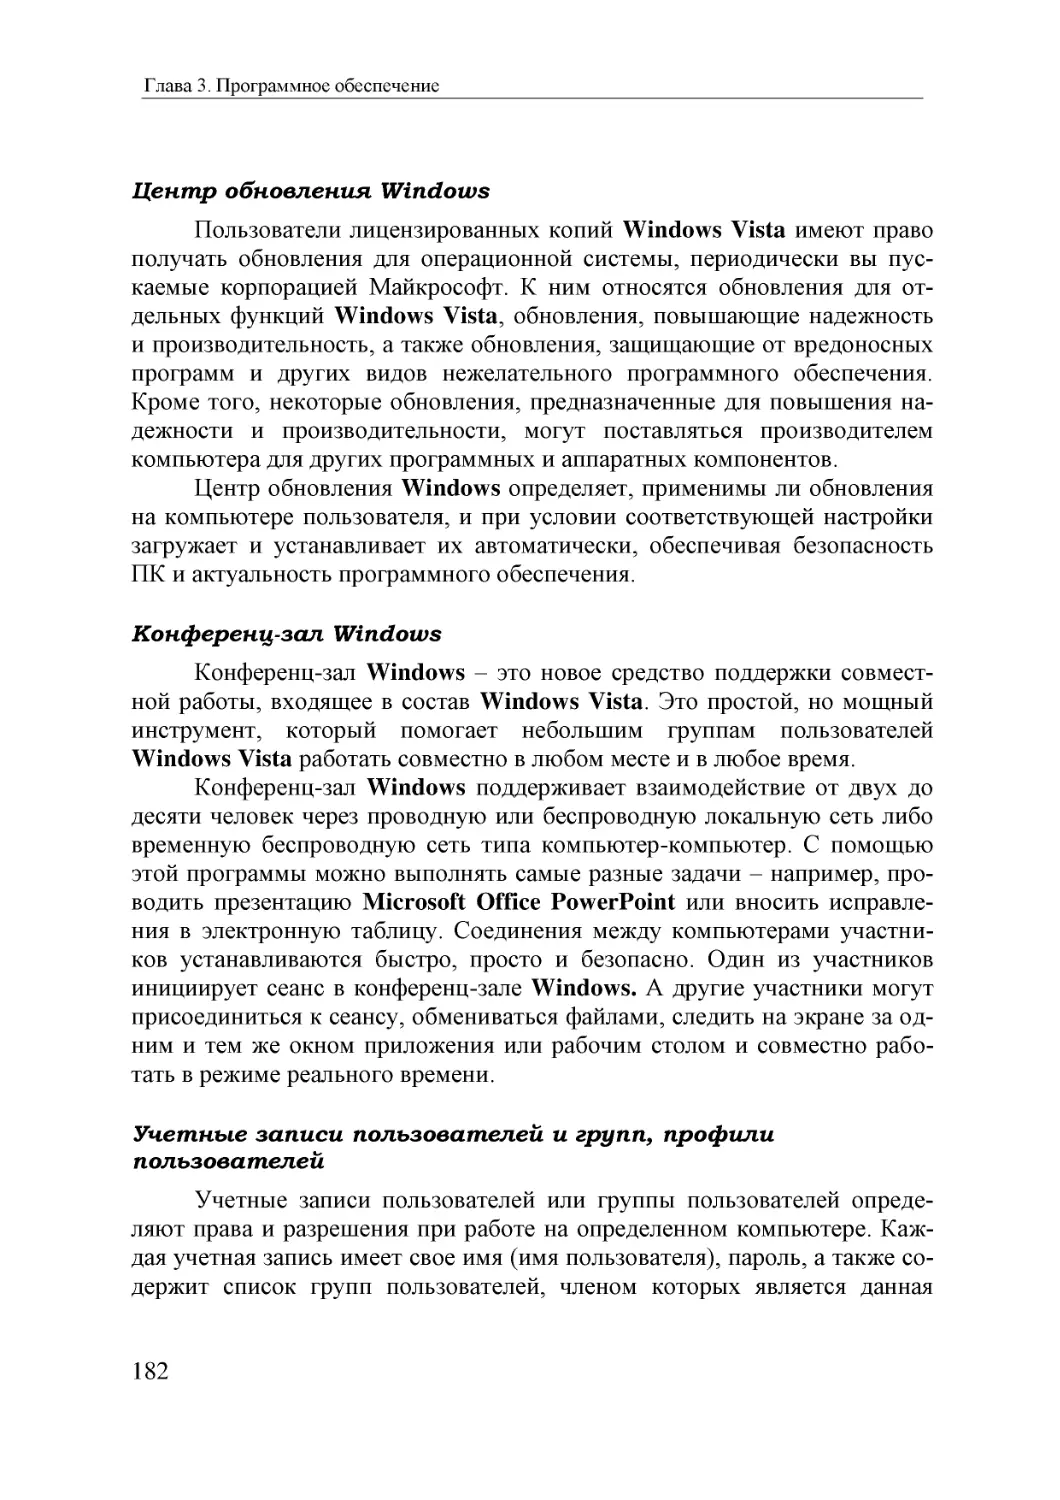 Informatika_Uchebnik_dlya_vuzov_2010 182